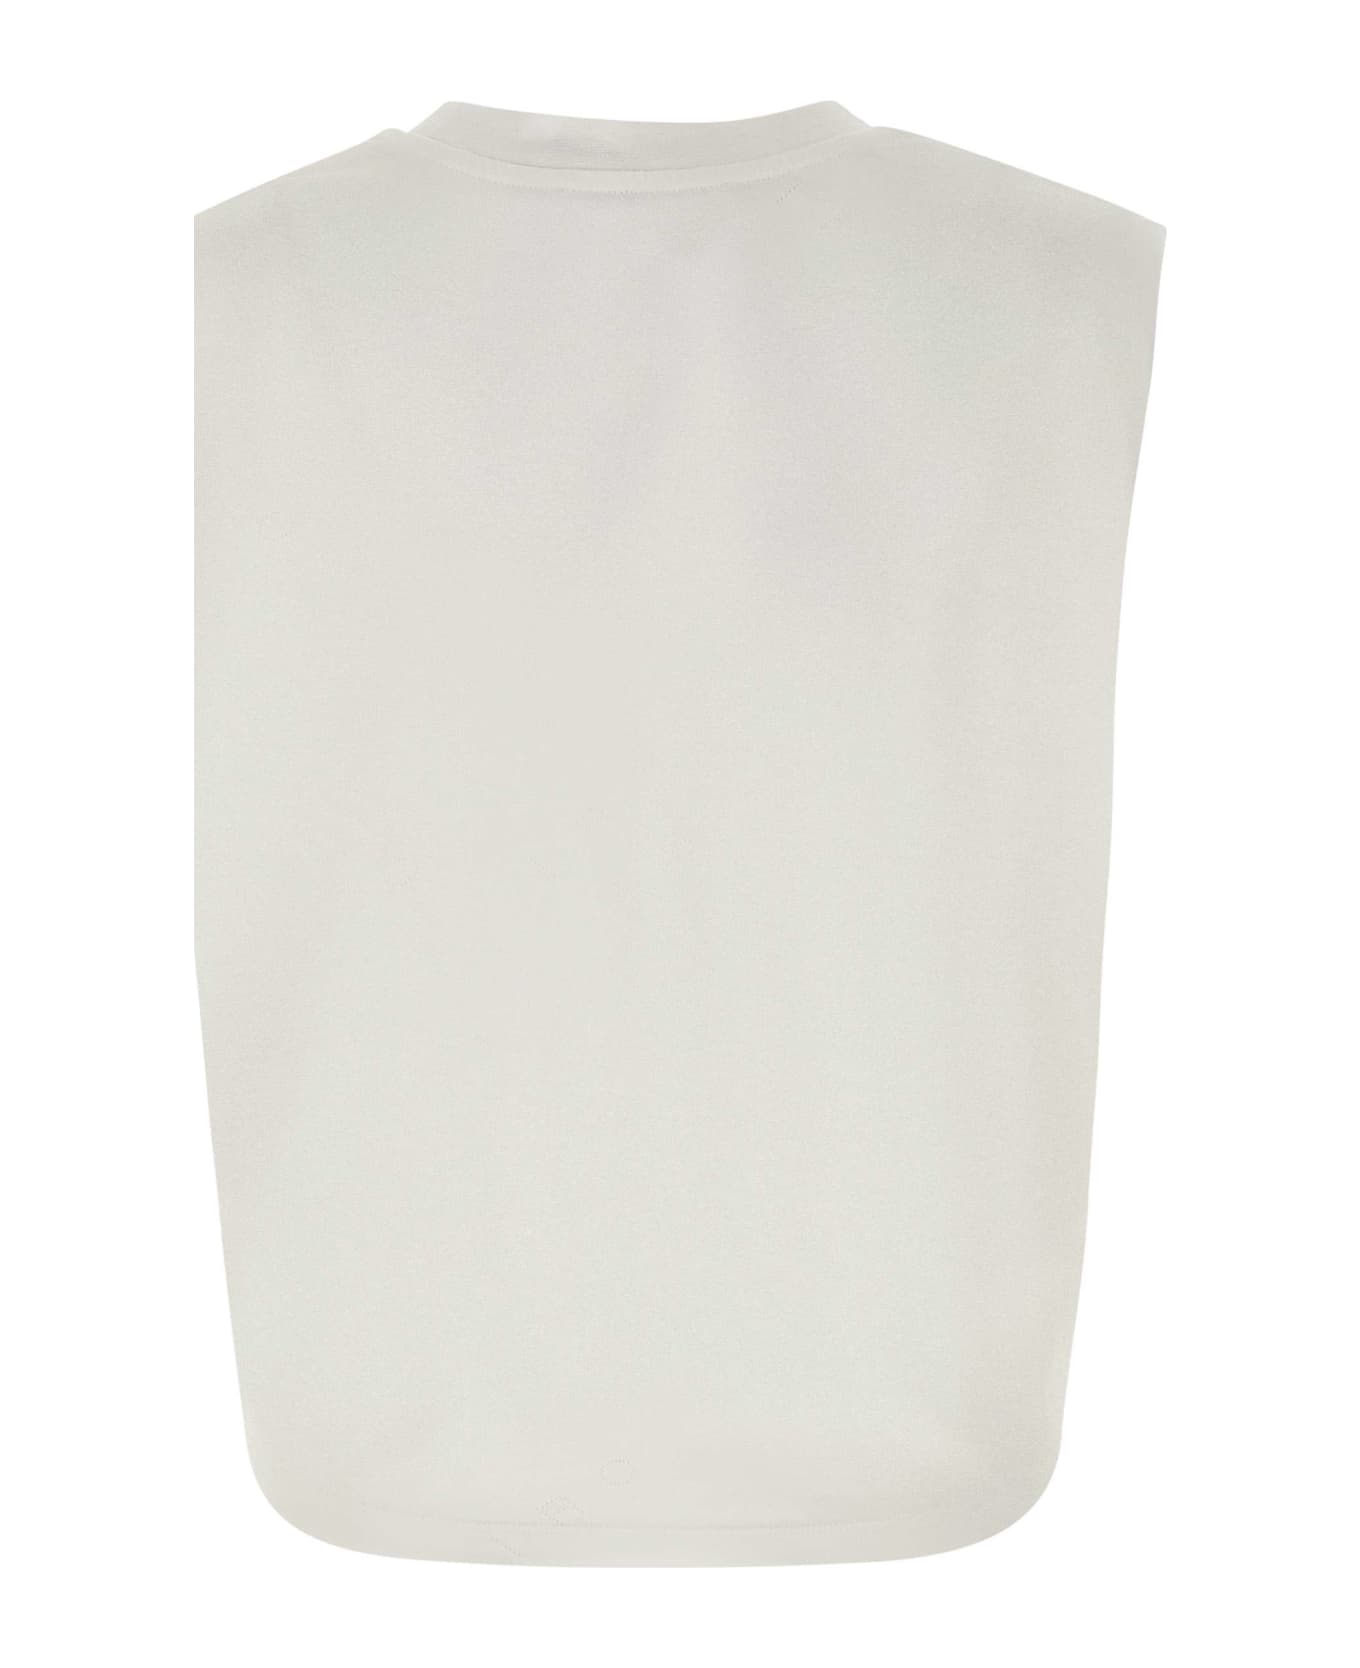 IRO "juli" Cotton T-shirt - WHITE